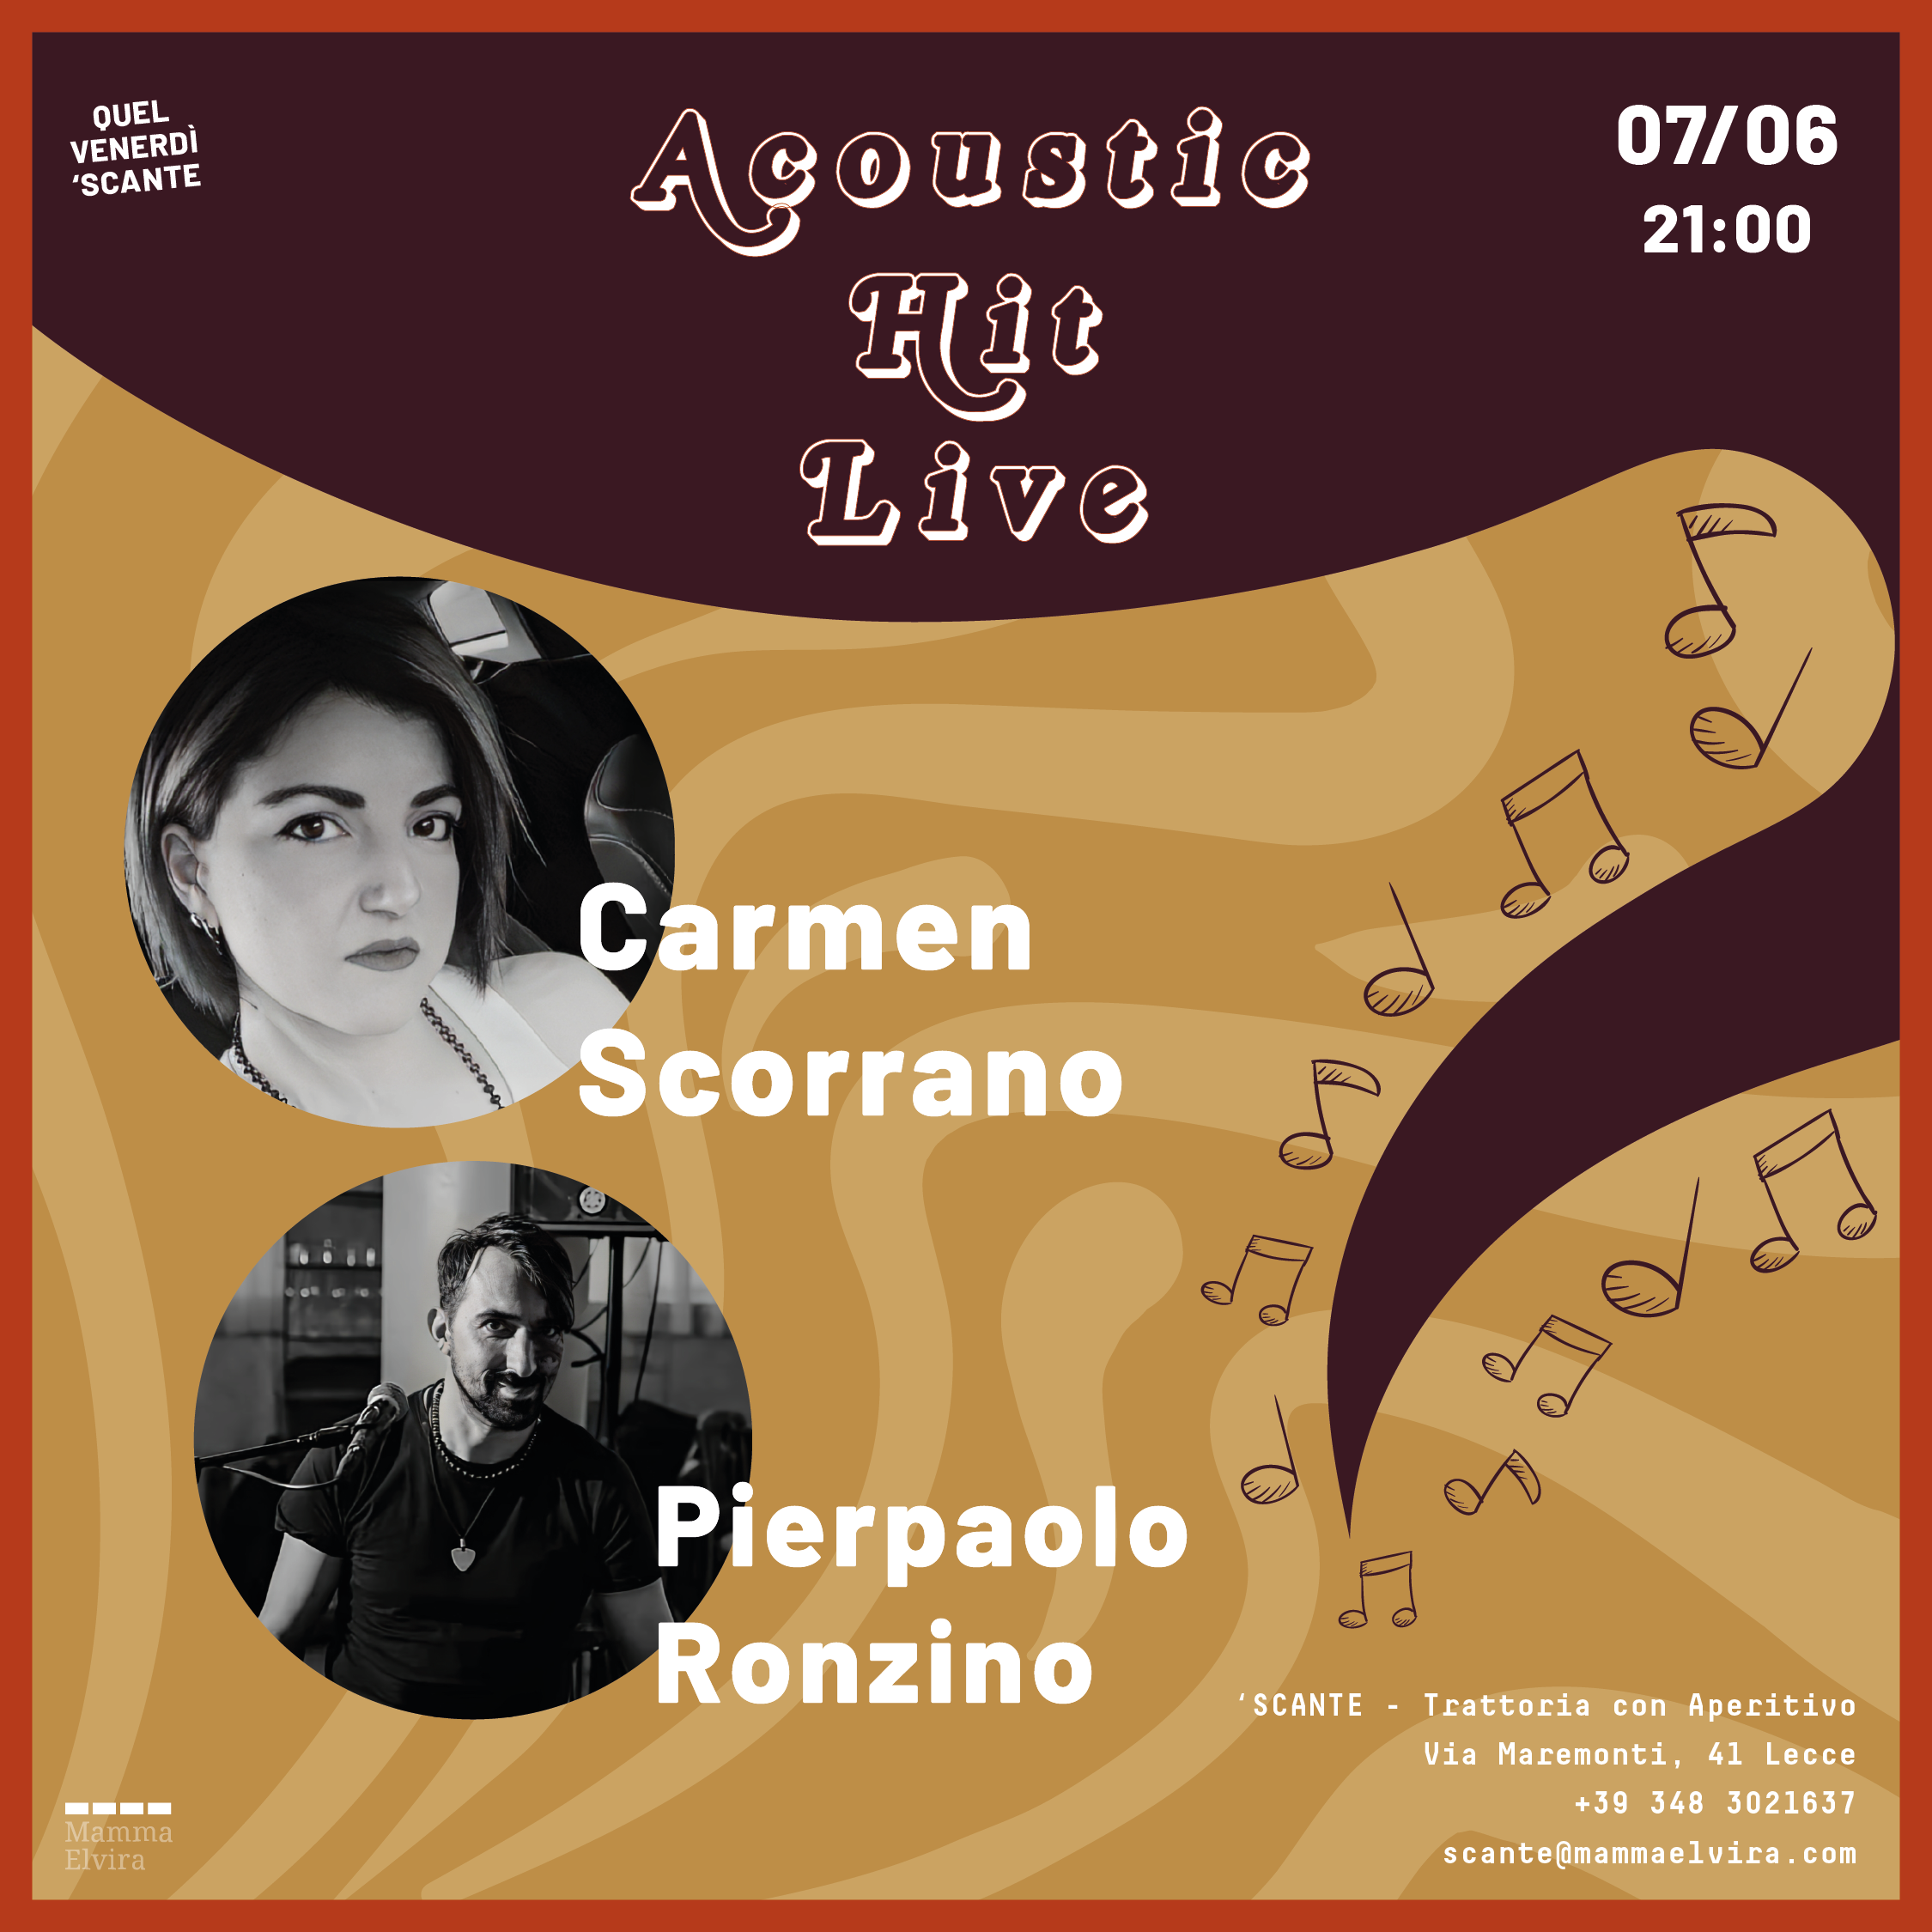 Carmen Scorrano & Pierpaolo Ronzino cover image